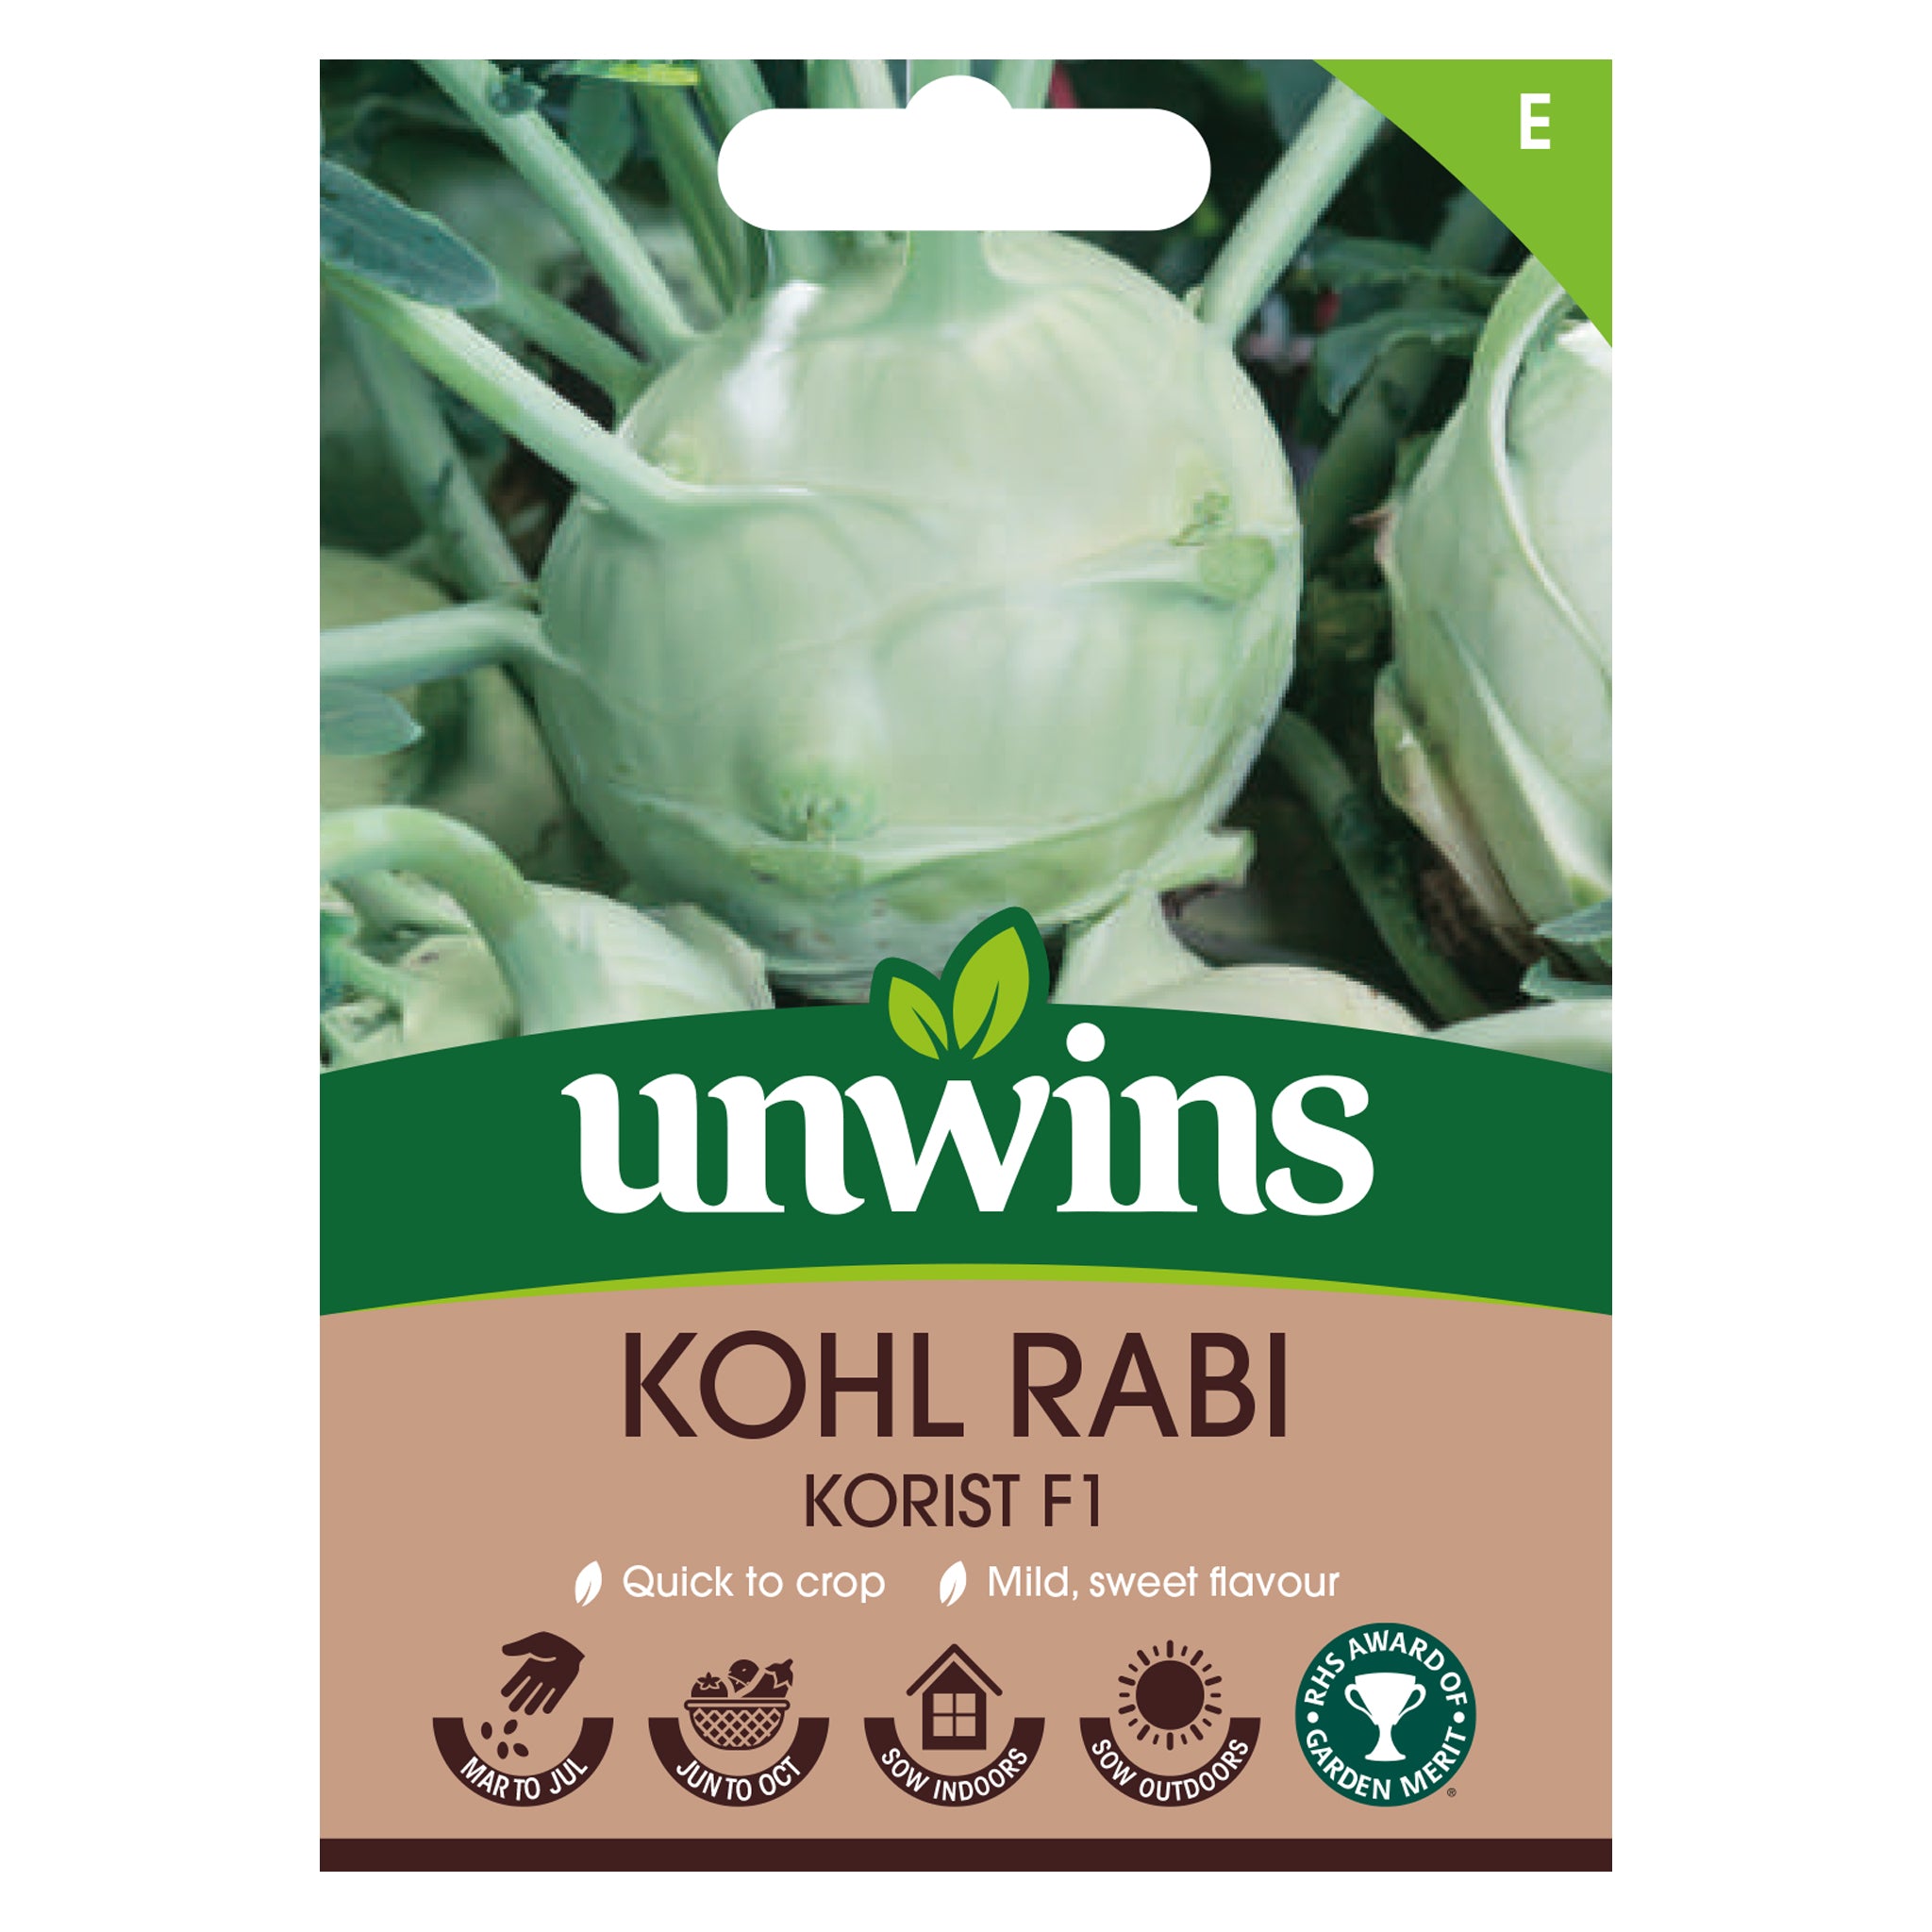 Unwins Kohl Rabi Korist F1 Seeds